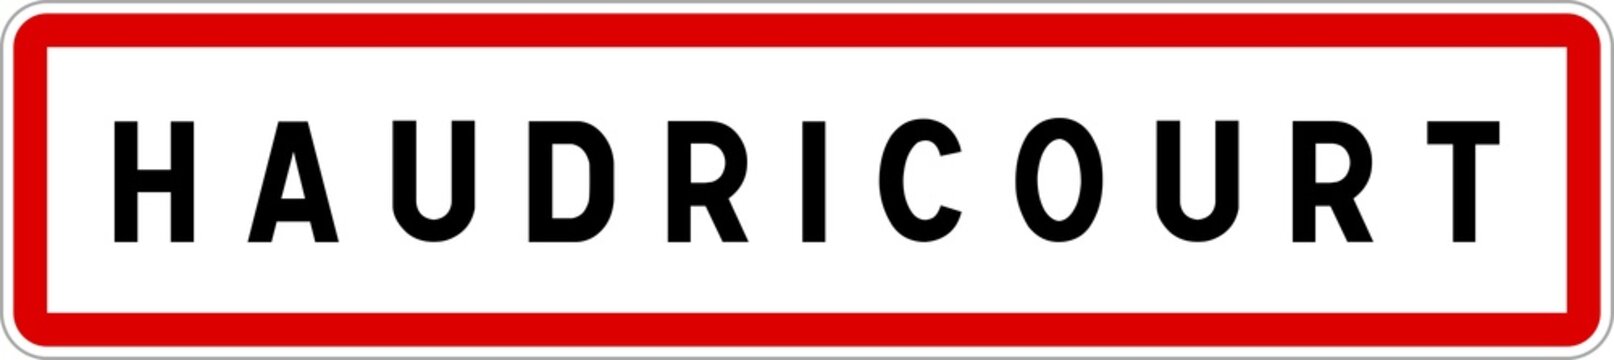 Panneau entrée ville agglomération Haudricourt / Town entrance sign Haudricourt